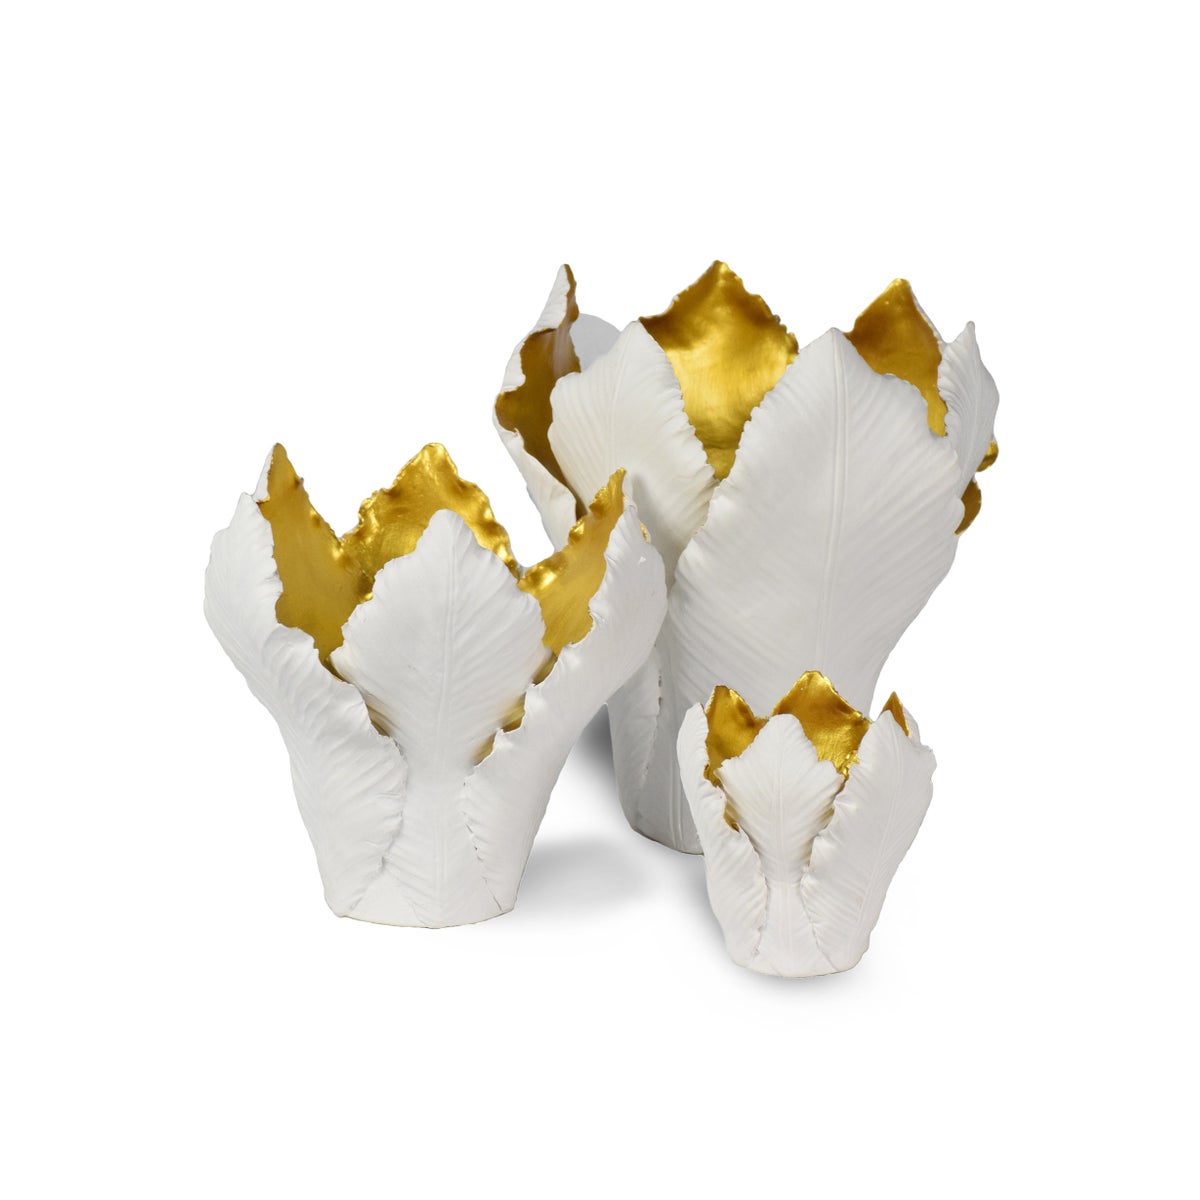 Kobu Candle Holder Set - White & Old Gold